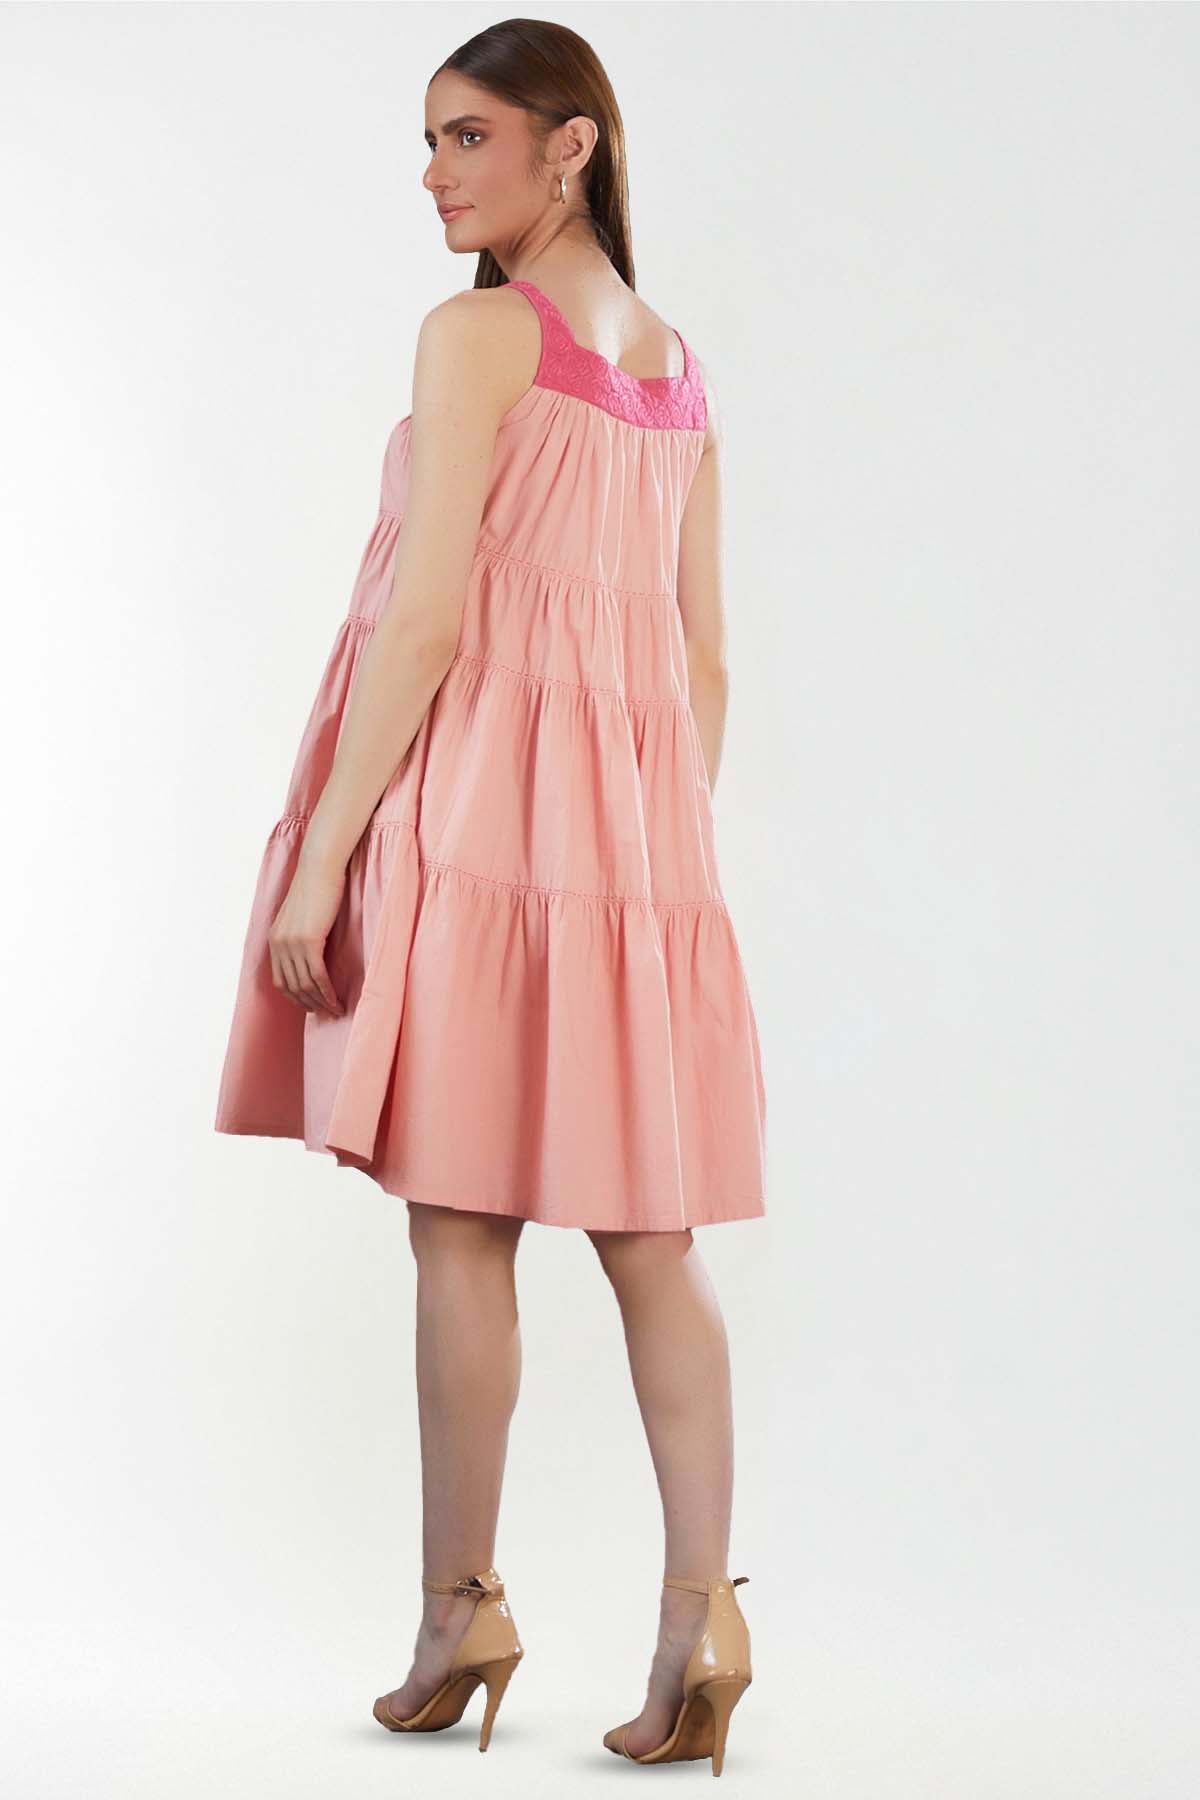 Blush Layered Mini Dress